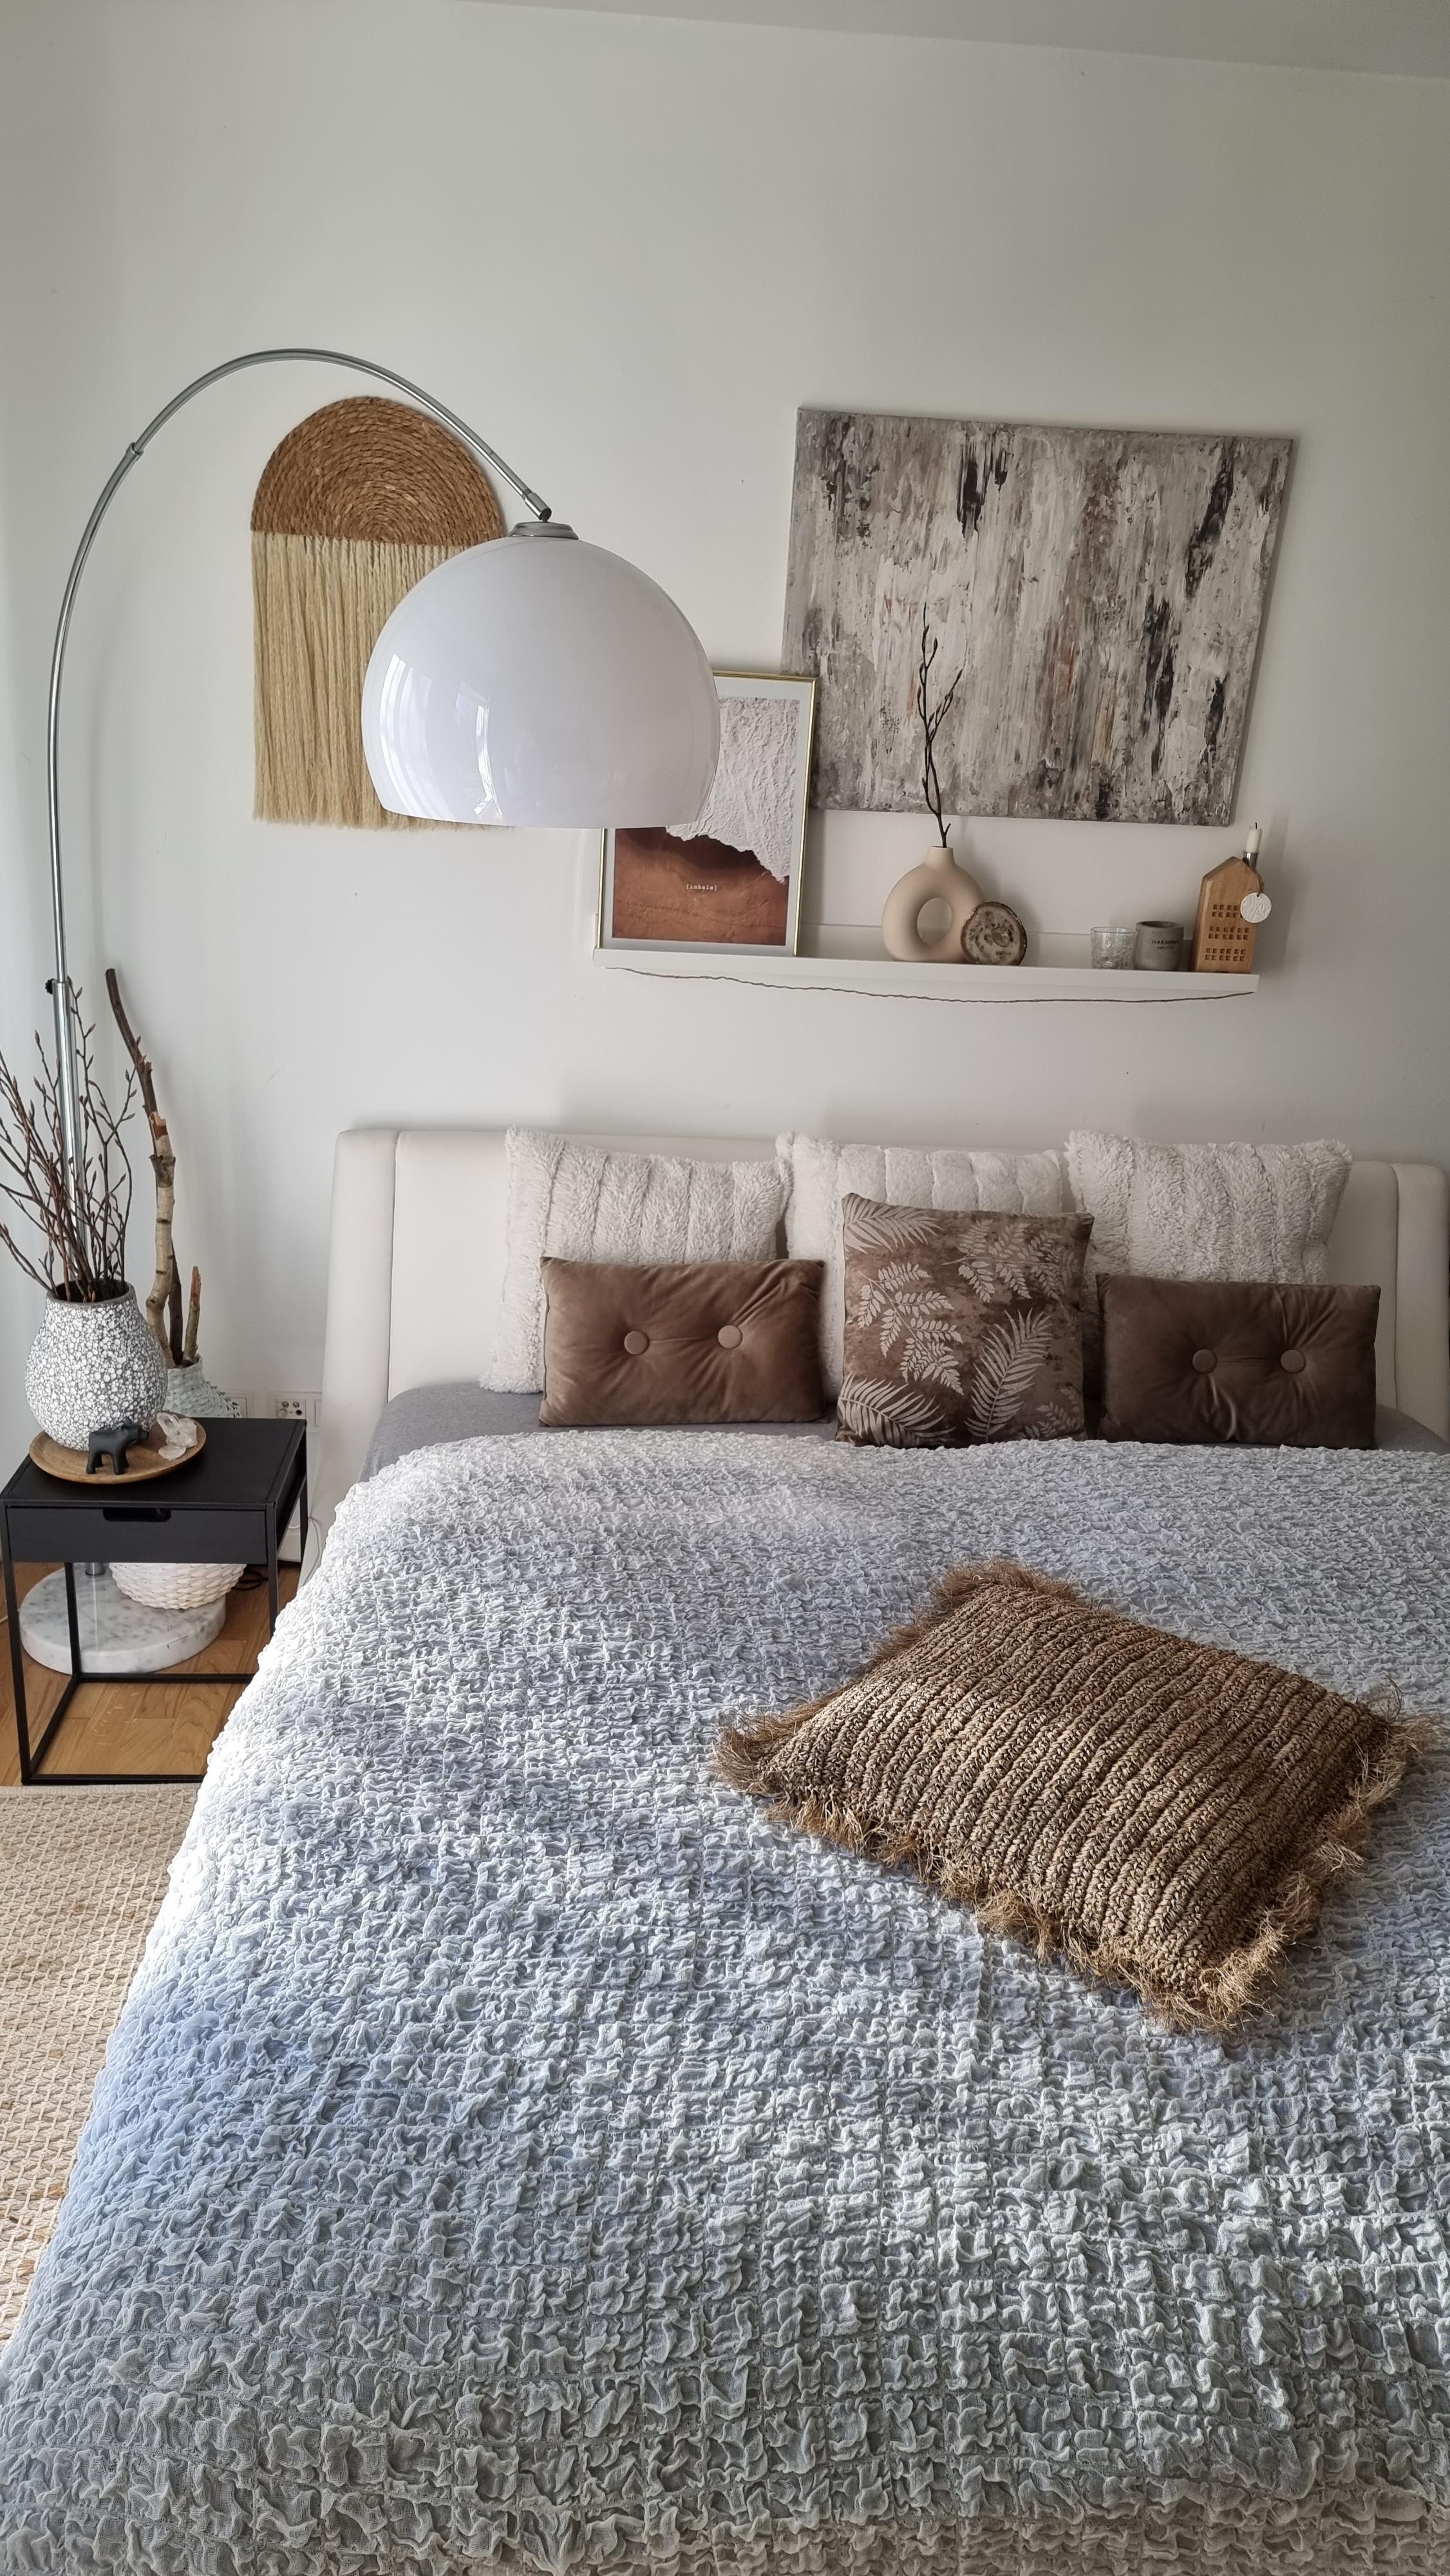 Unser Ruhe-Raum.
#schlafzimmerideen #homeinspo #bohohousedecor #wohnraumliebe #schönerwohnen #couchmagazin 